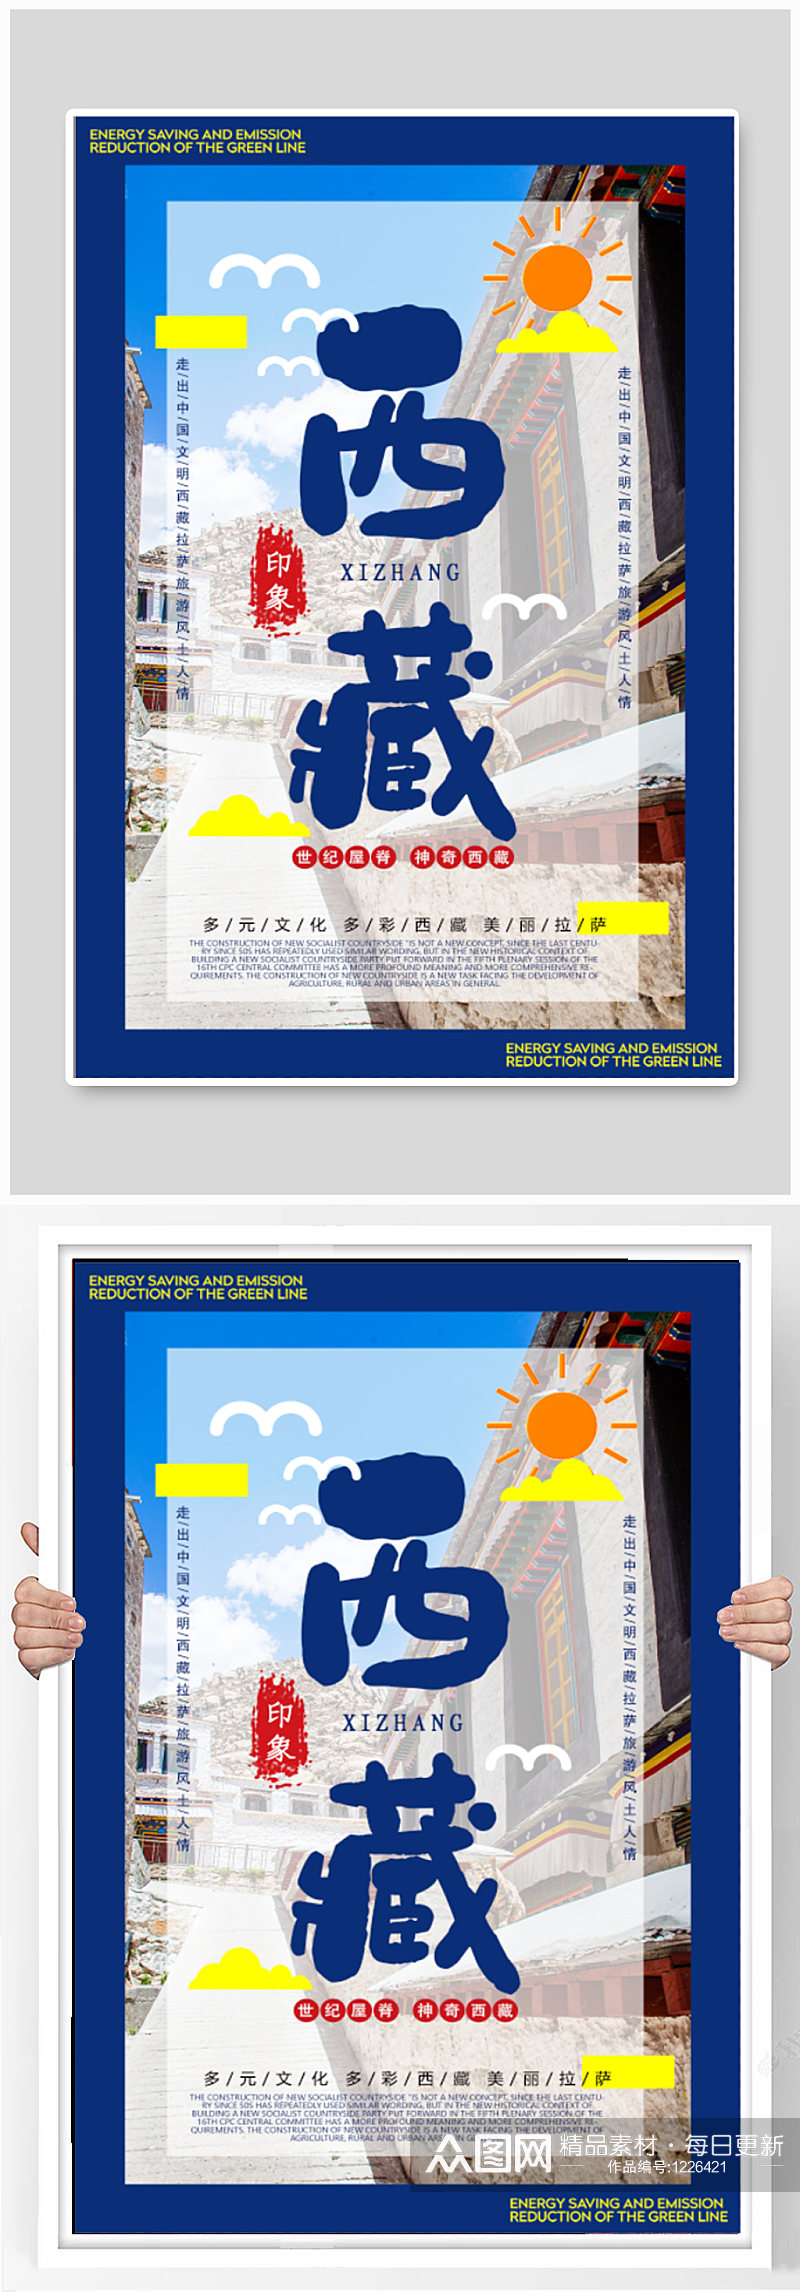 西藏旅游旅行社海报素材